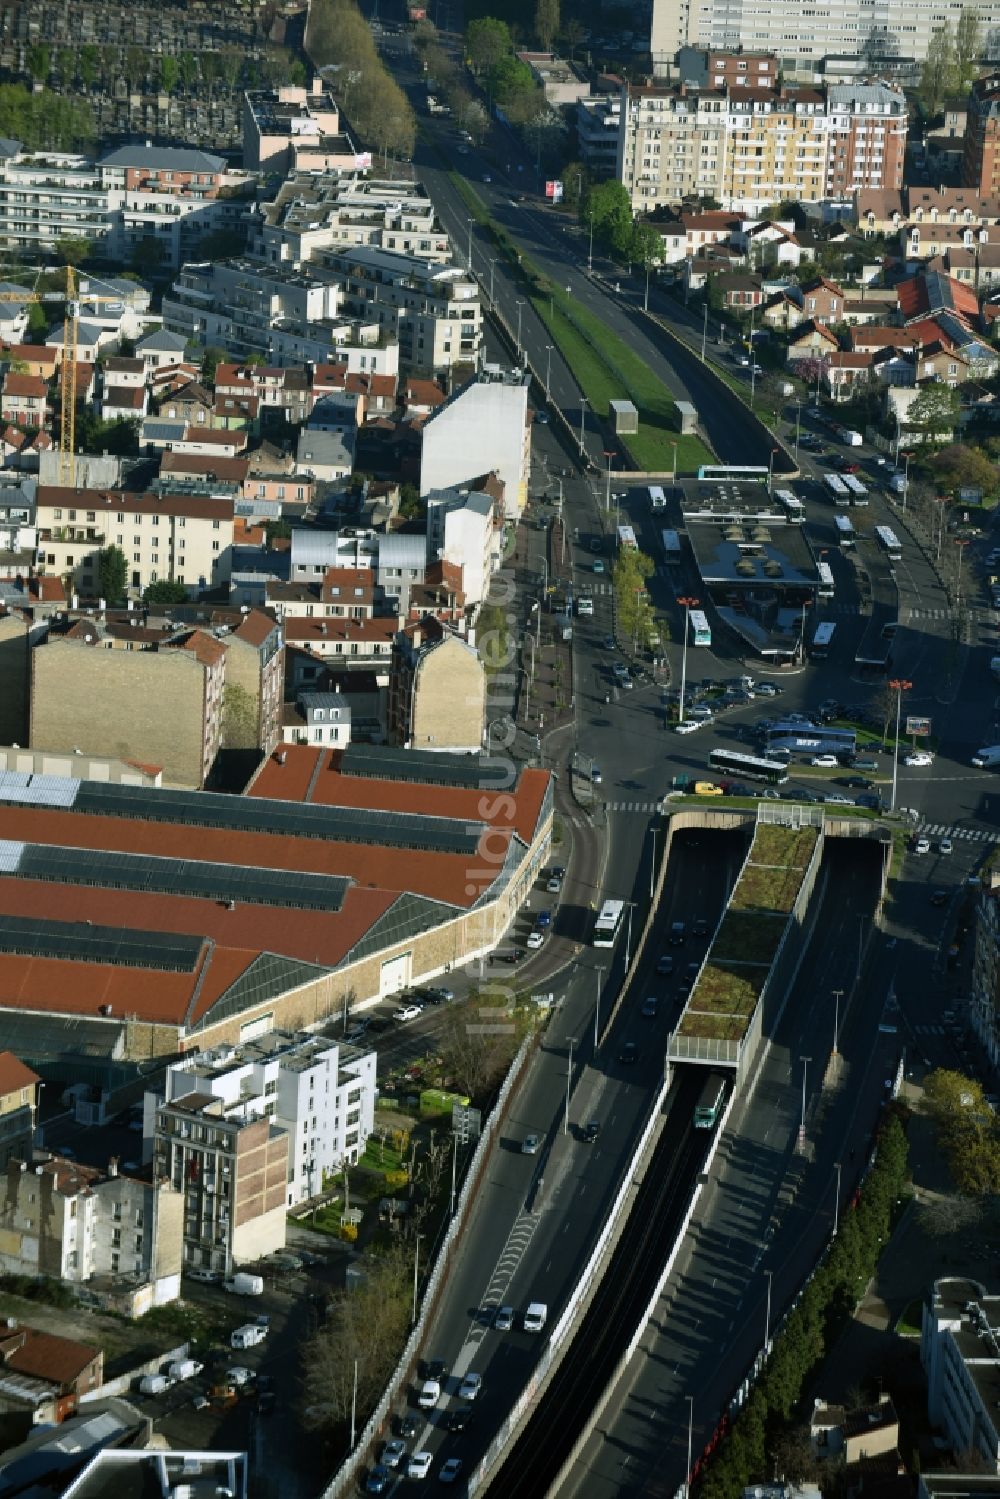 Luftbild Paris - Bahnhofsgebäude und Gleisanlagen des Metro- U-Bahnhofes Gabriel Peri Asnieres Gennevilliers in Paris in Ile-de-France, Frankreich